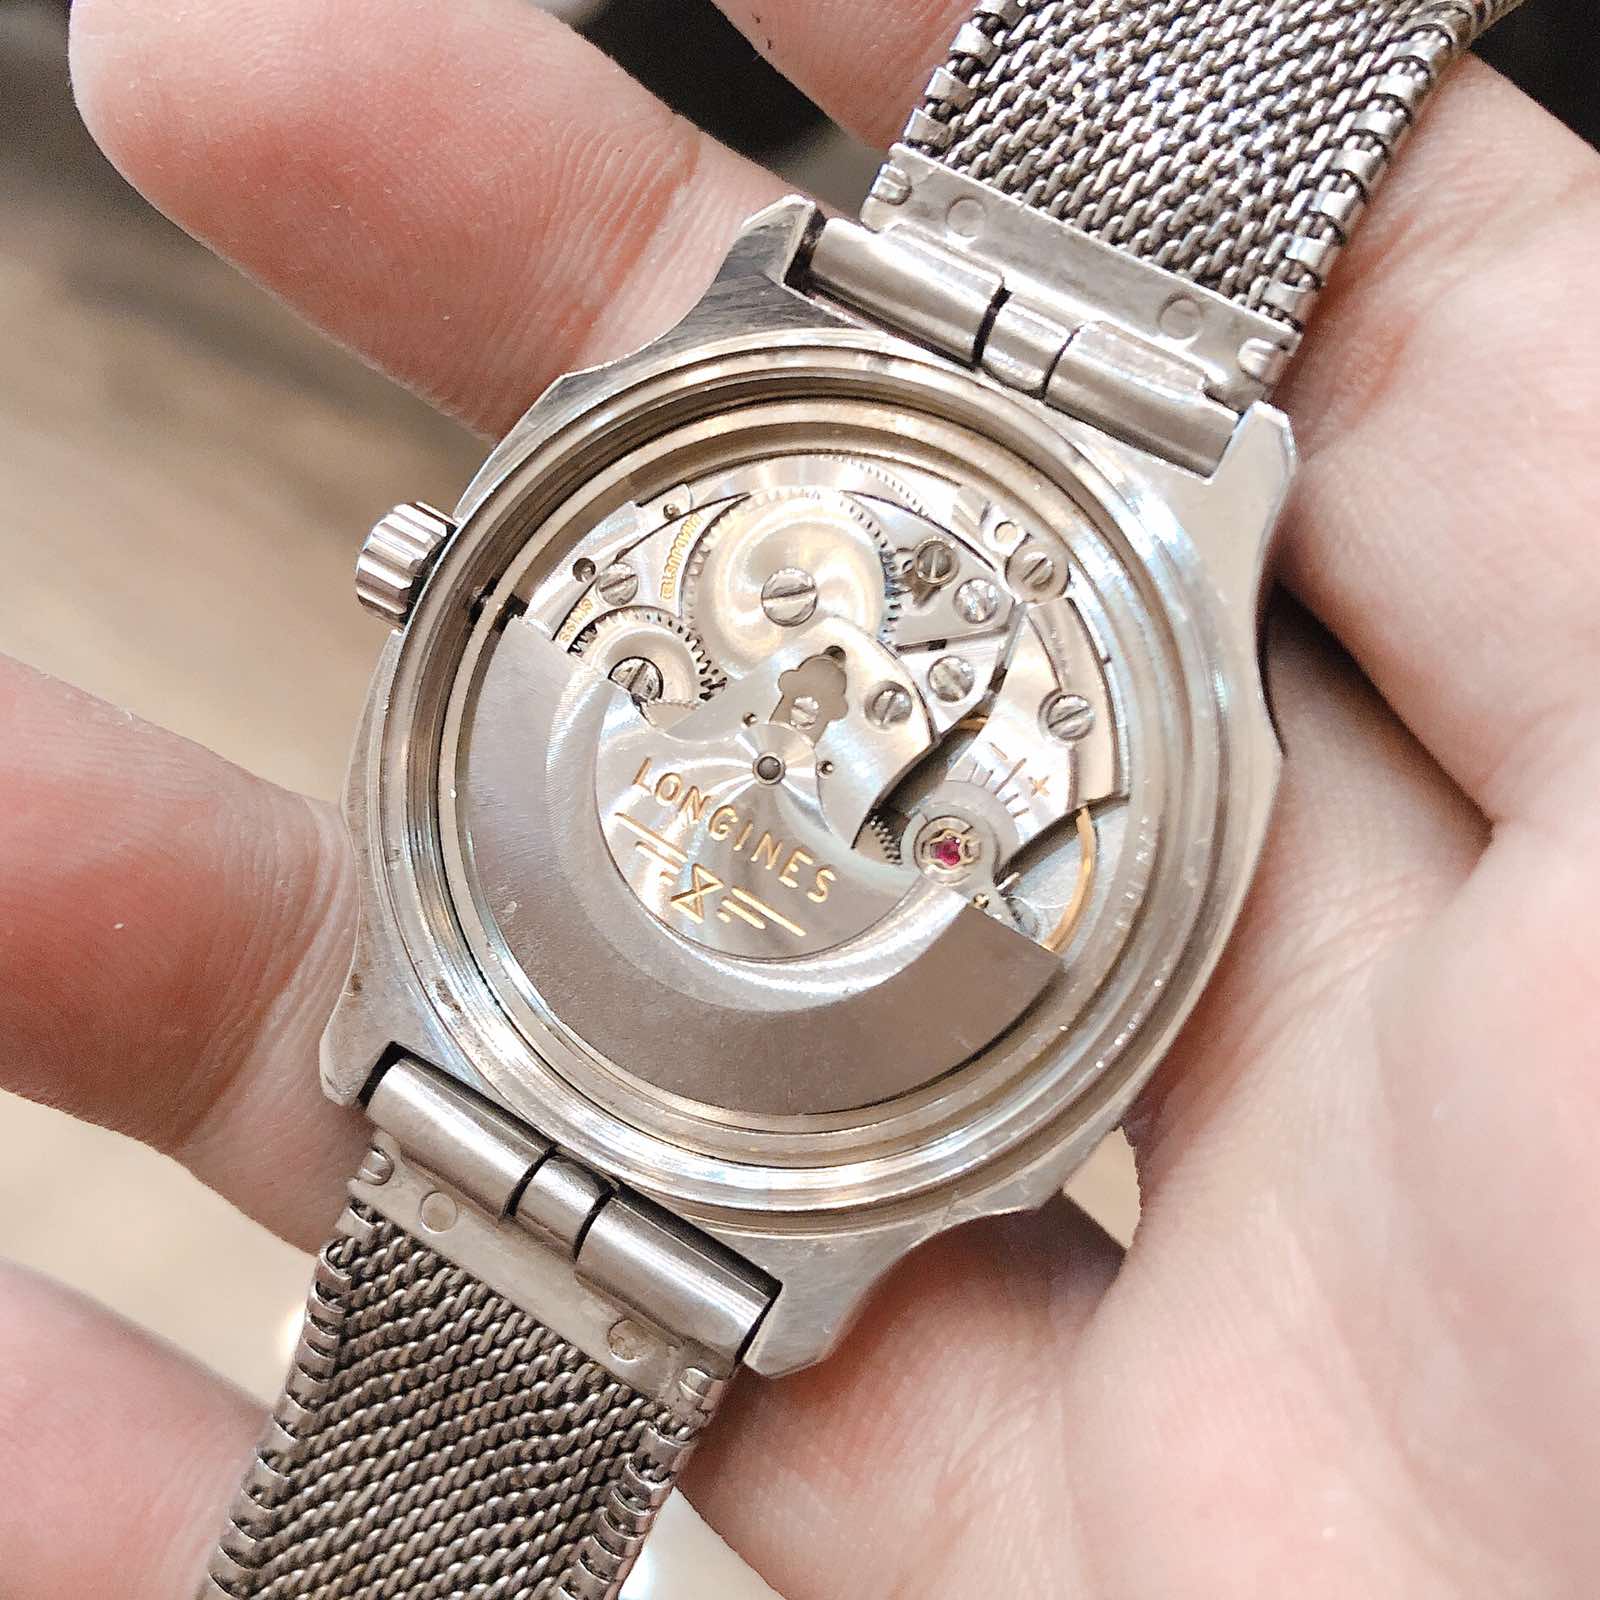 Đồng hồ cổ Longines automatic fullzin chính hãng Thụy Sĩ